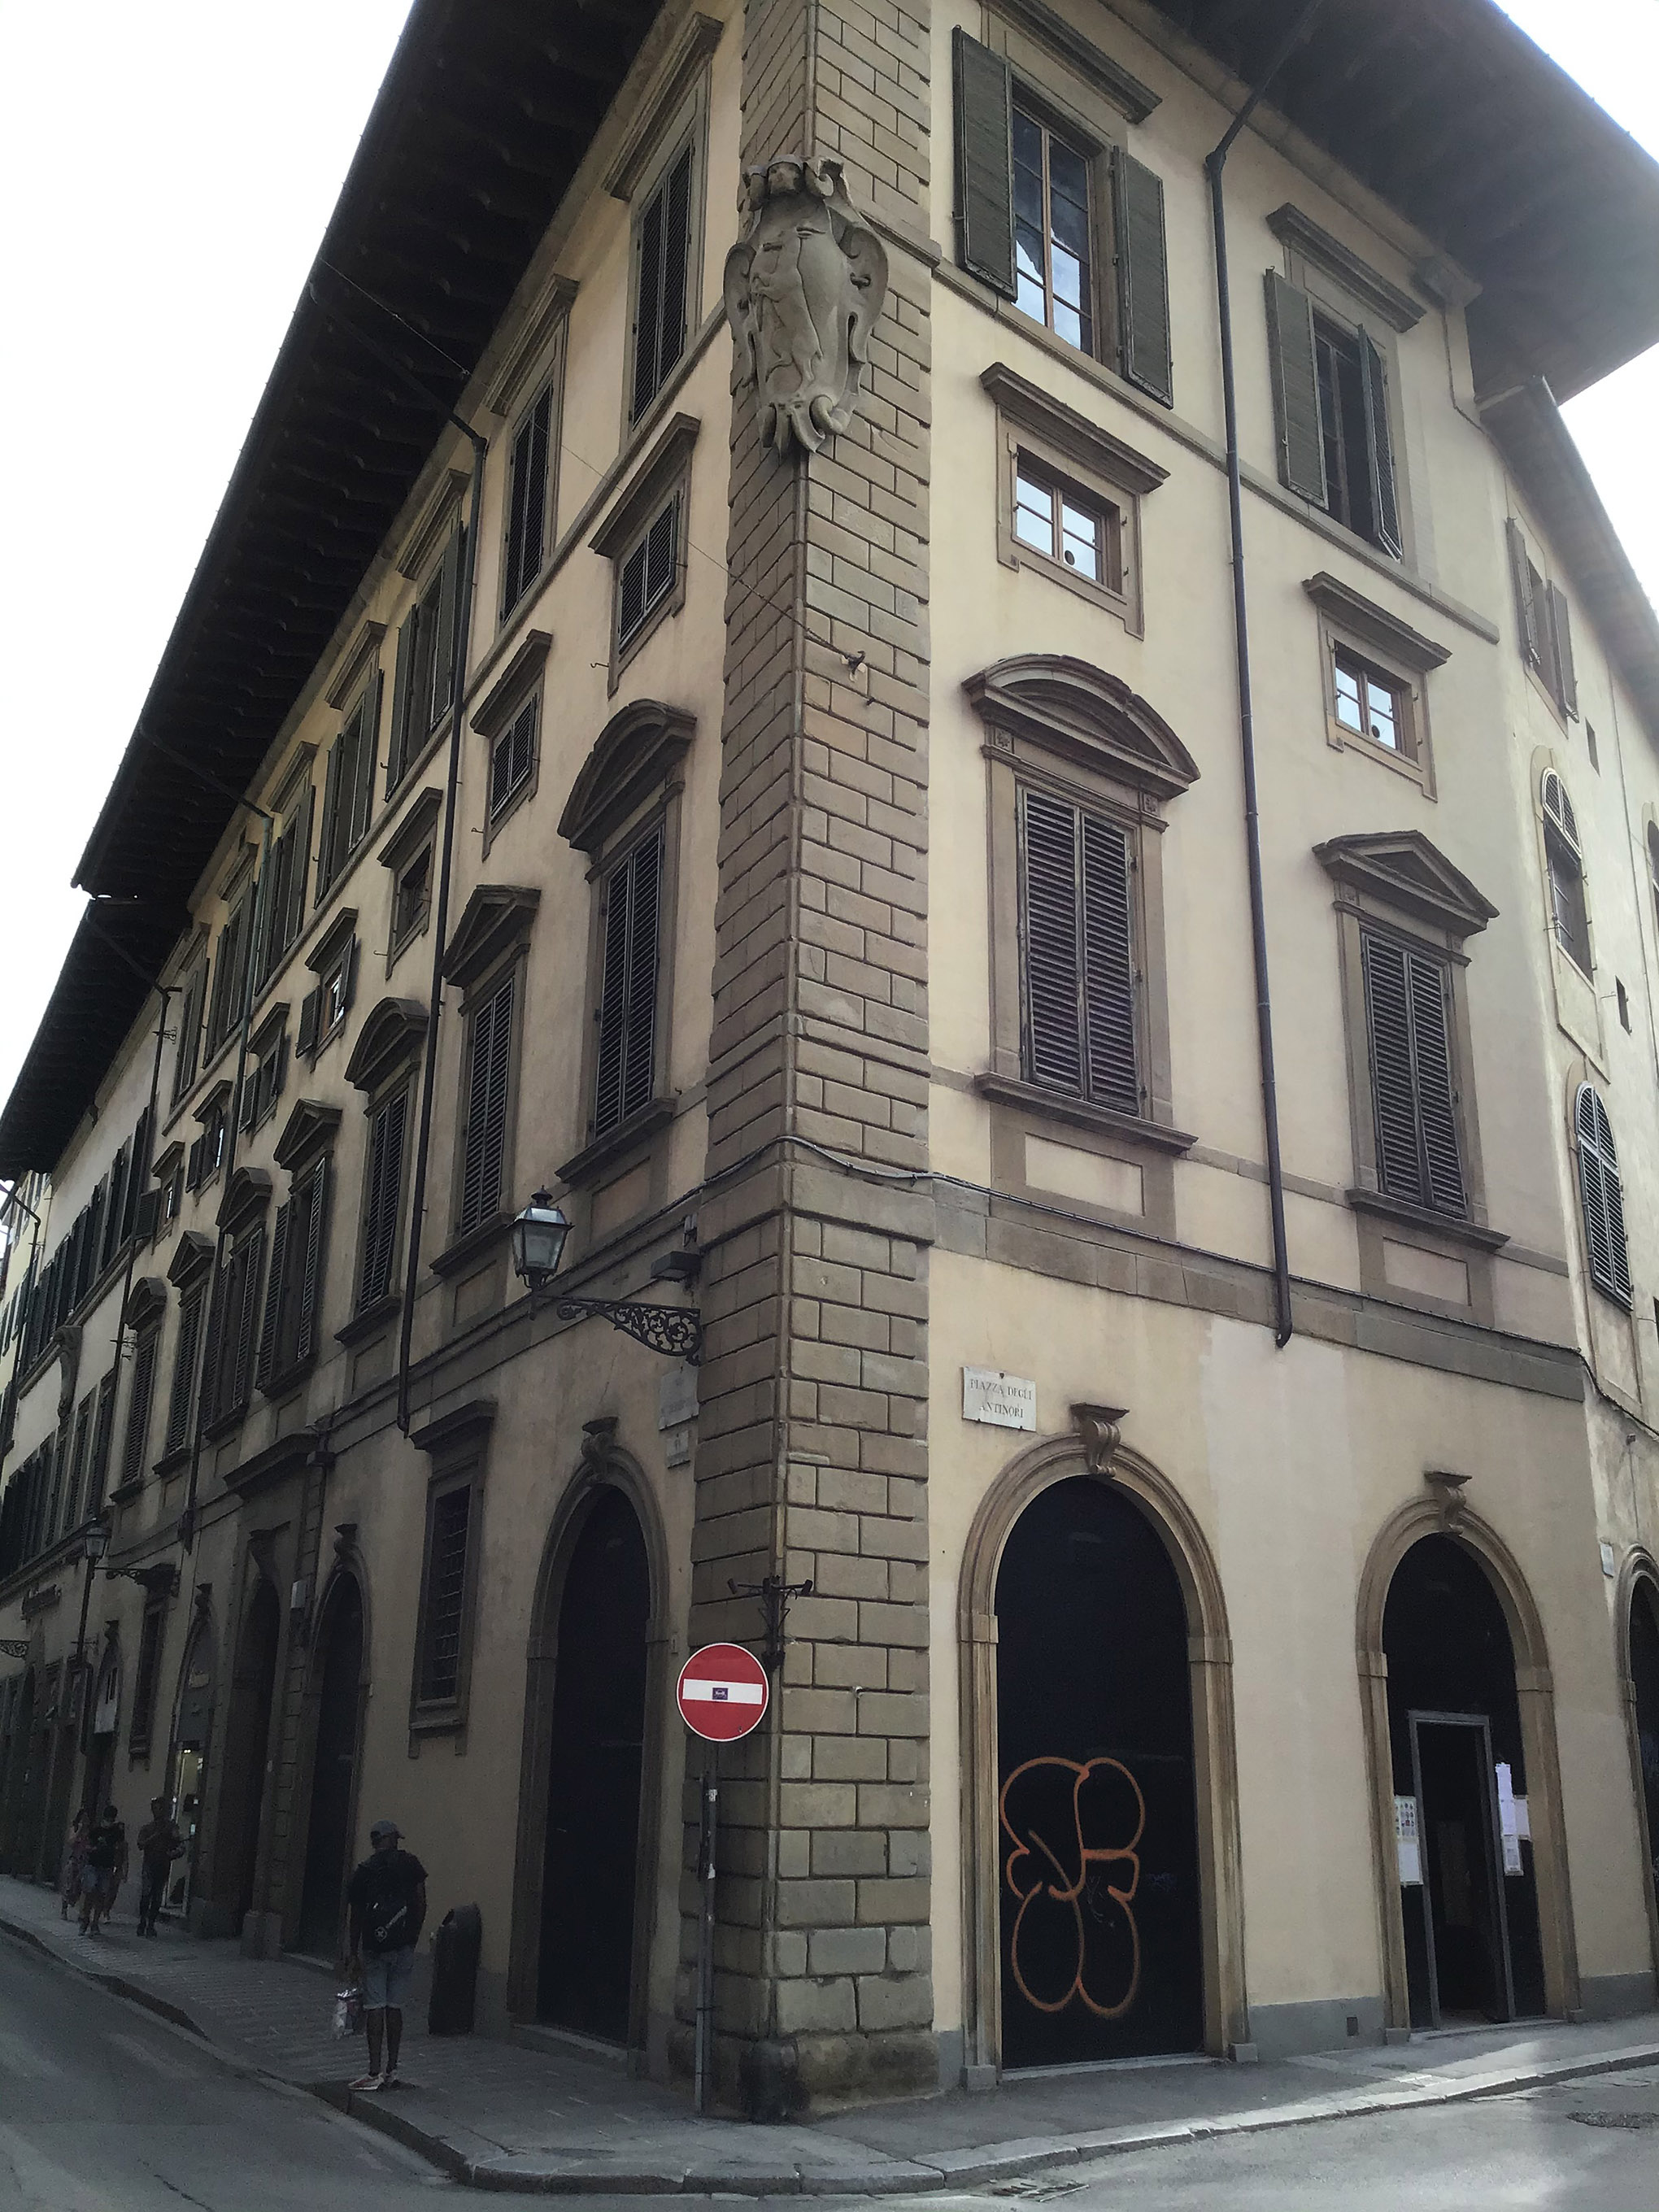 Palazzo già Pasquali poi da Cepparello (palazzo) - Firenze (FI) 